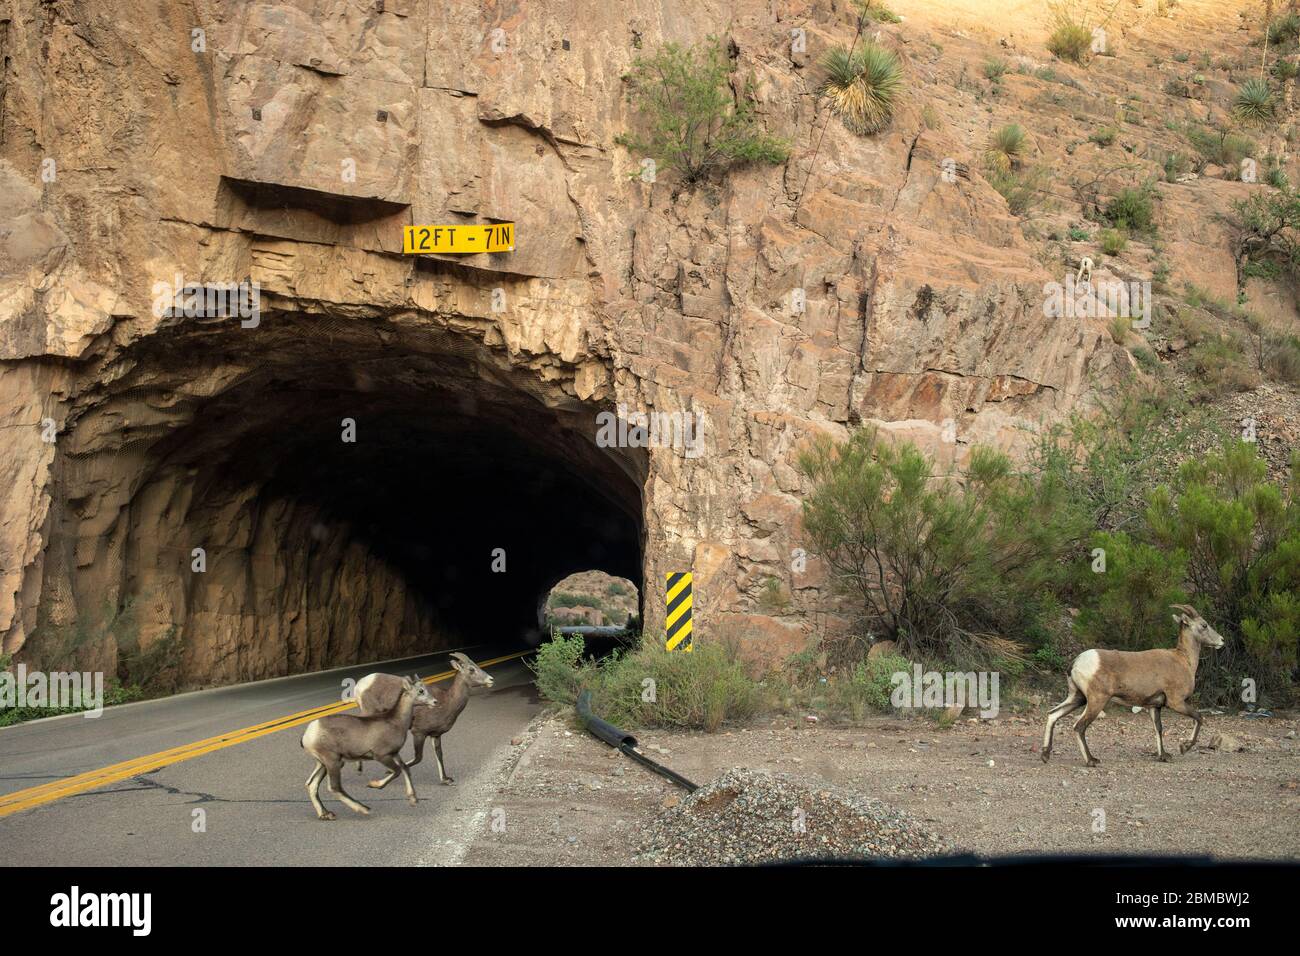 Une famille de gros moutons à corne traverse une route à l'entrée d'un tunnel Banque D'Images